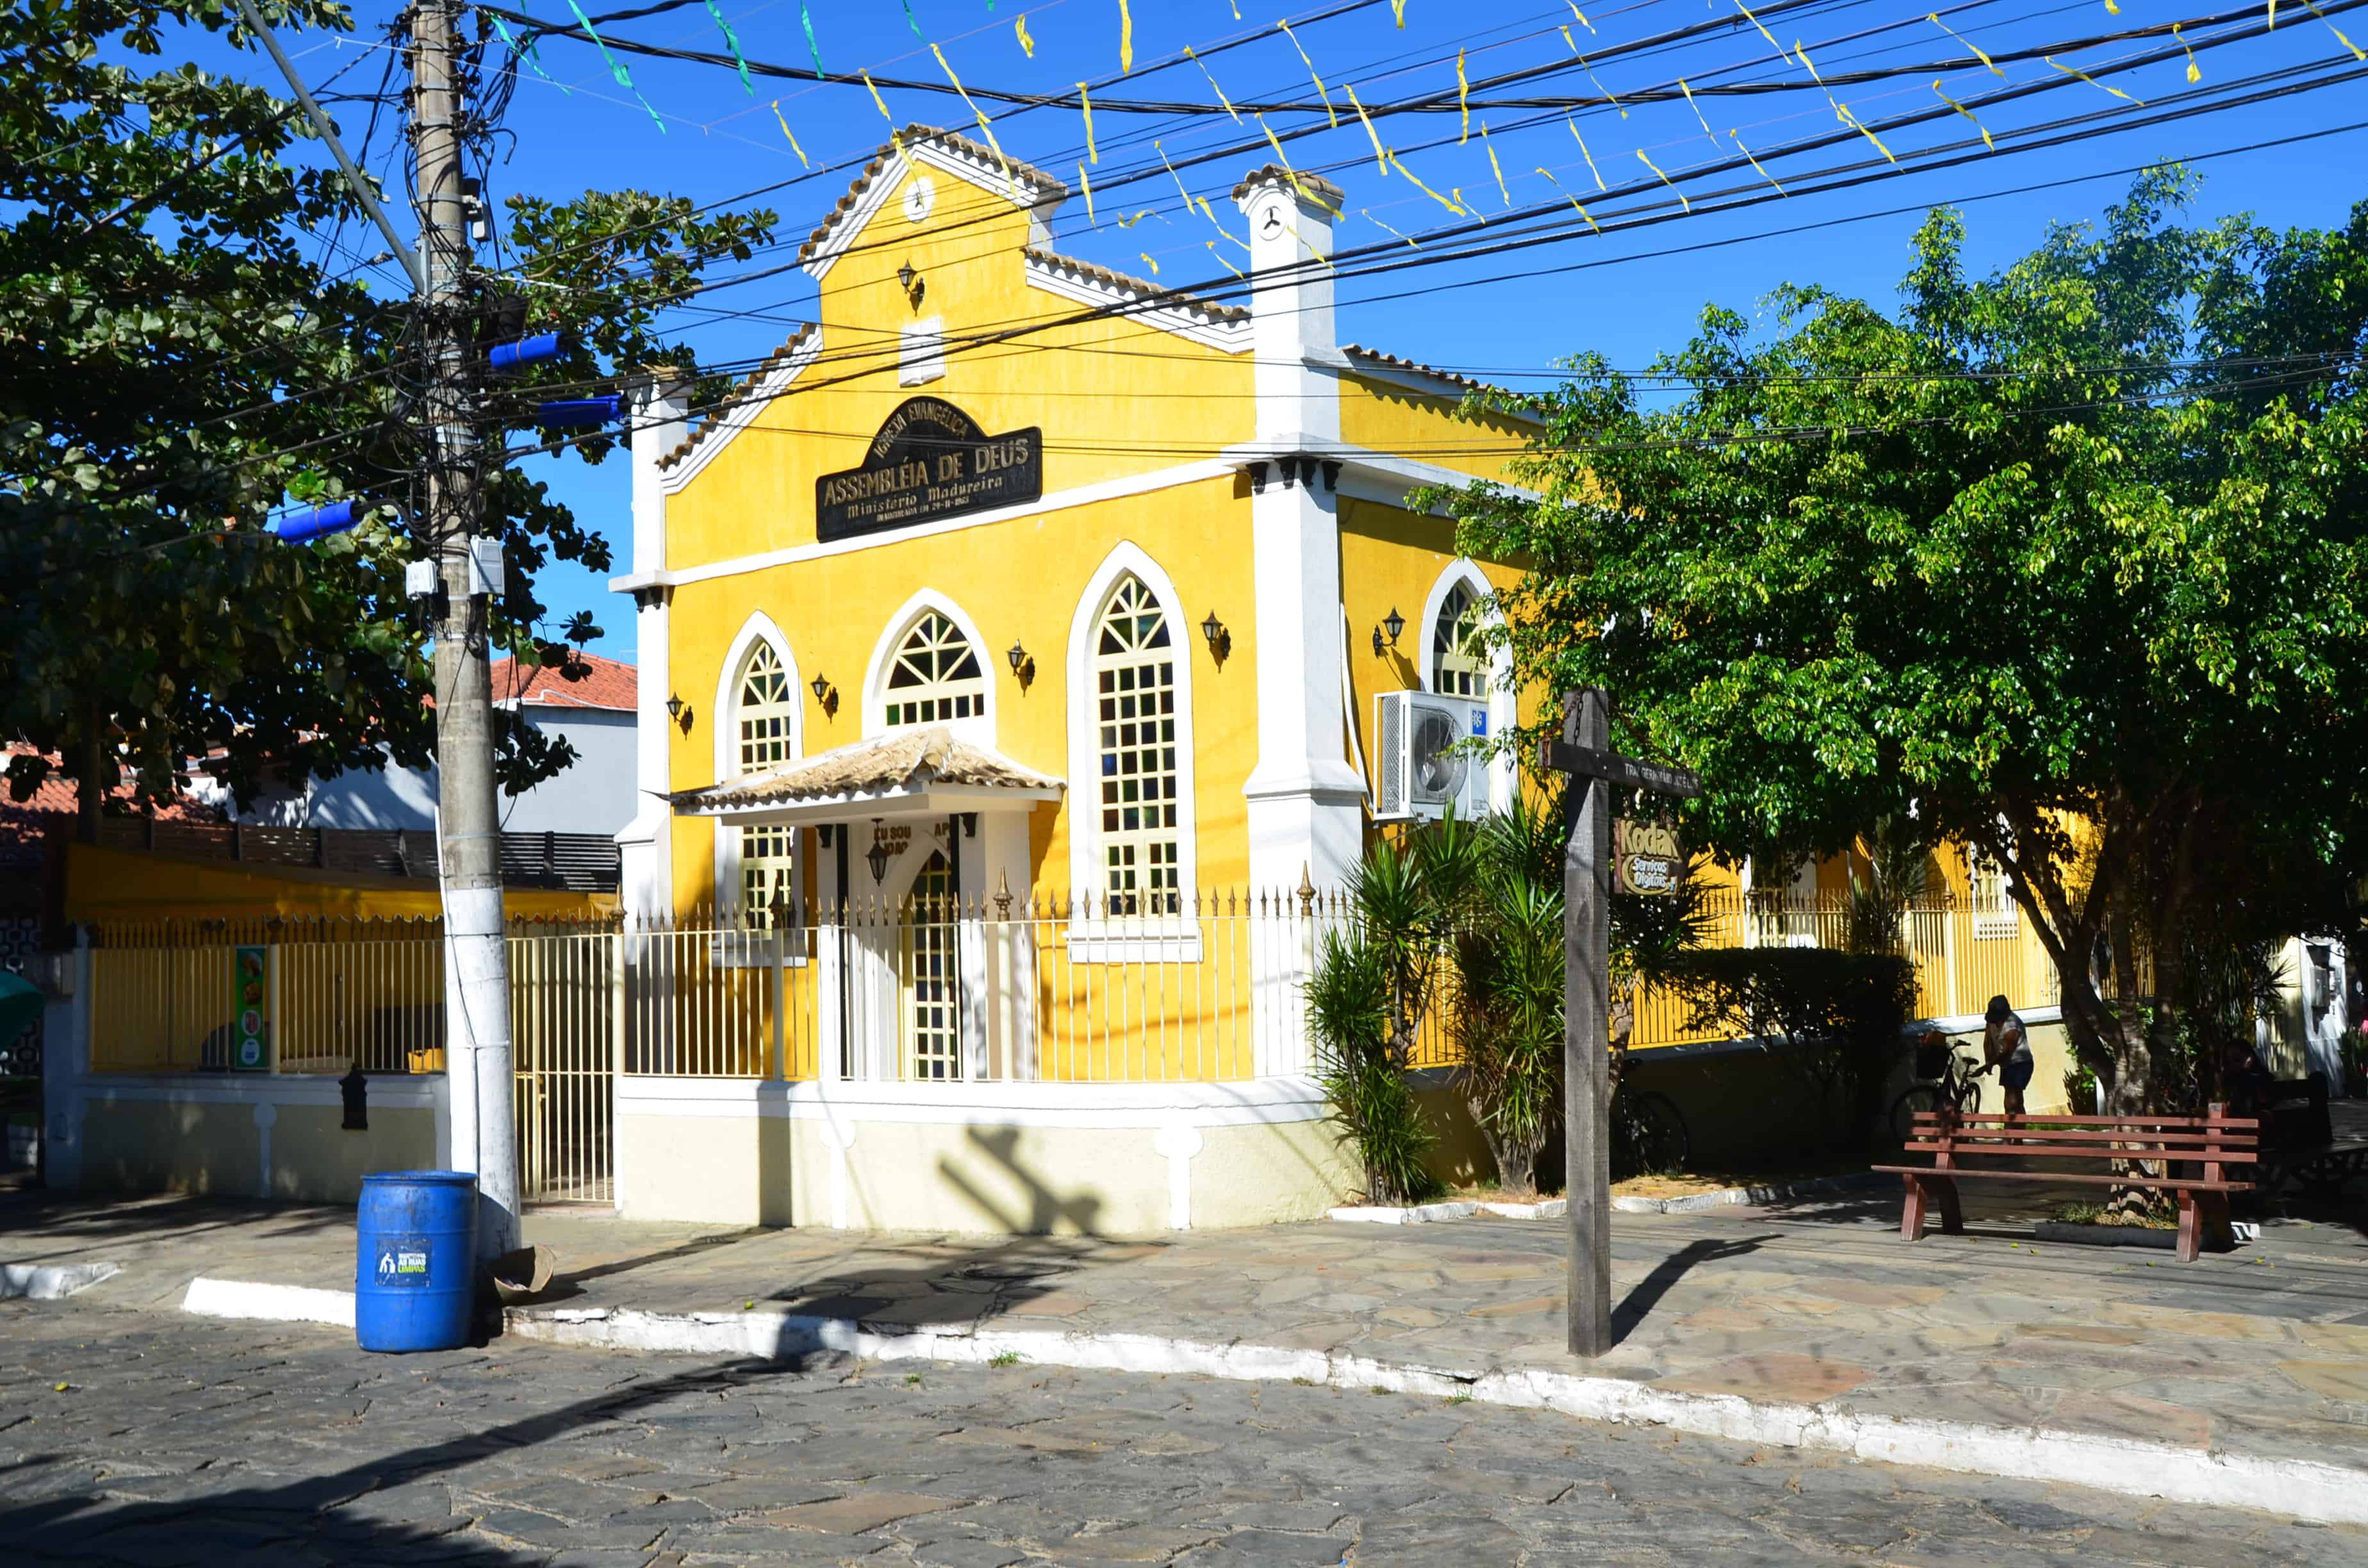 Assembléia de Deus Evangelical church in Búzios, Brazil